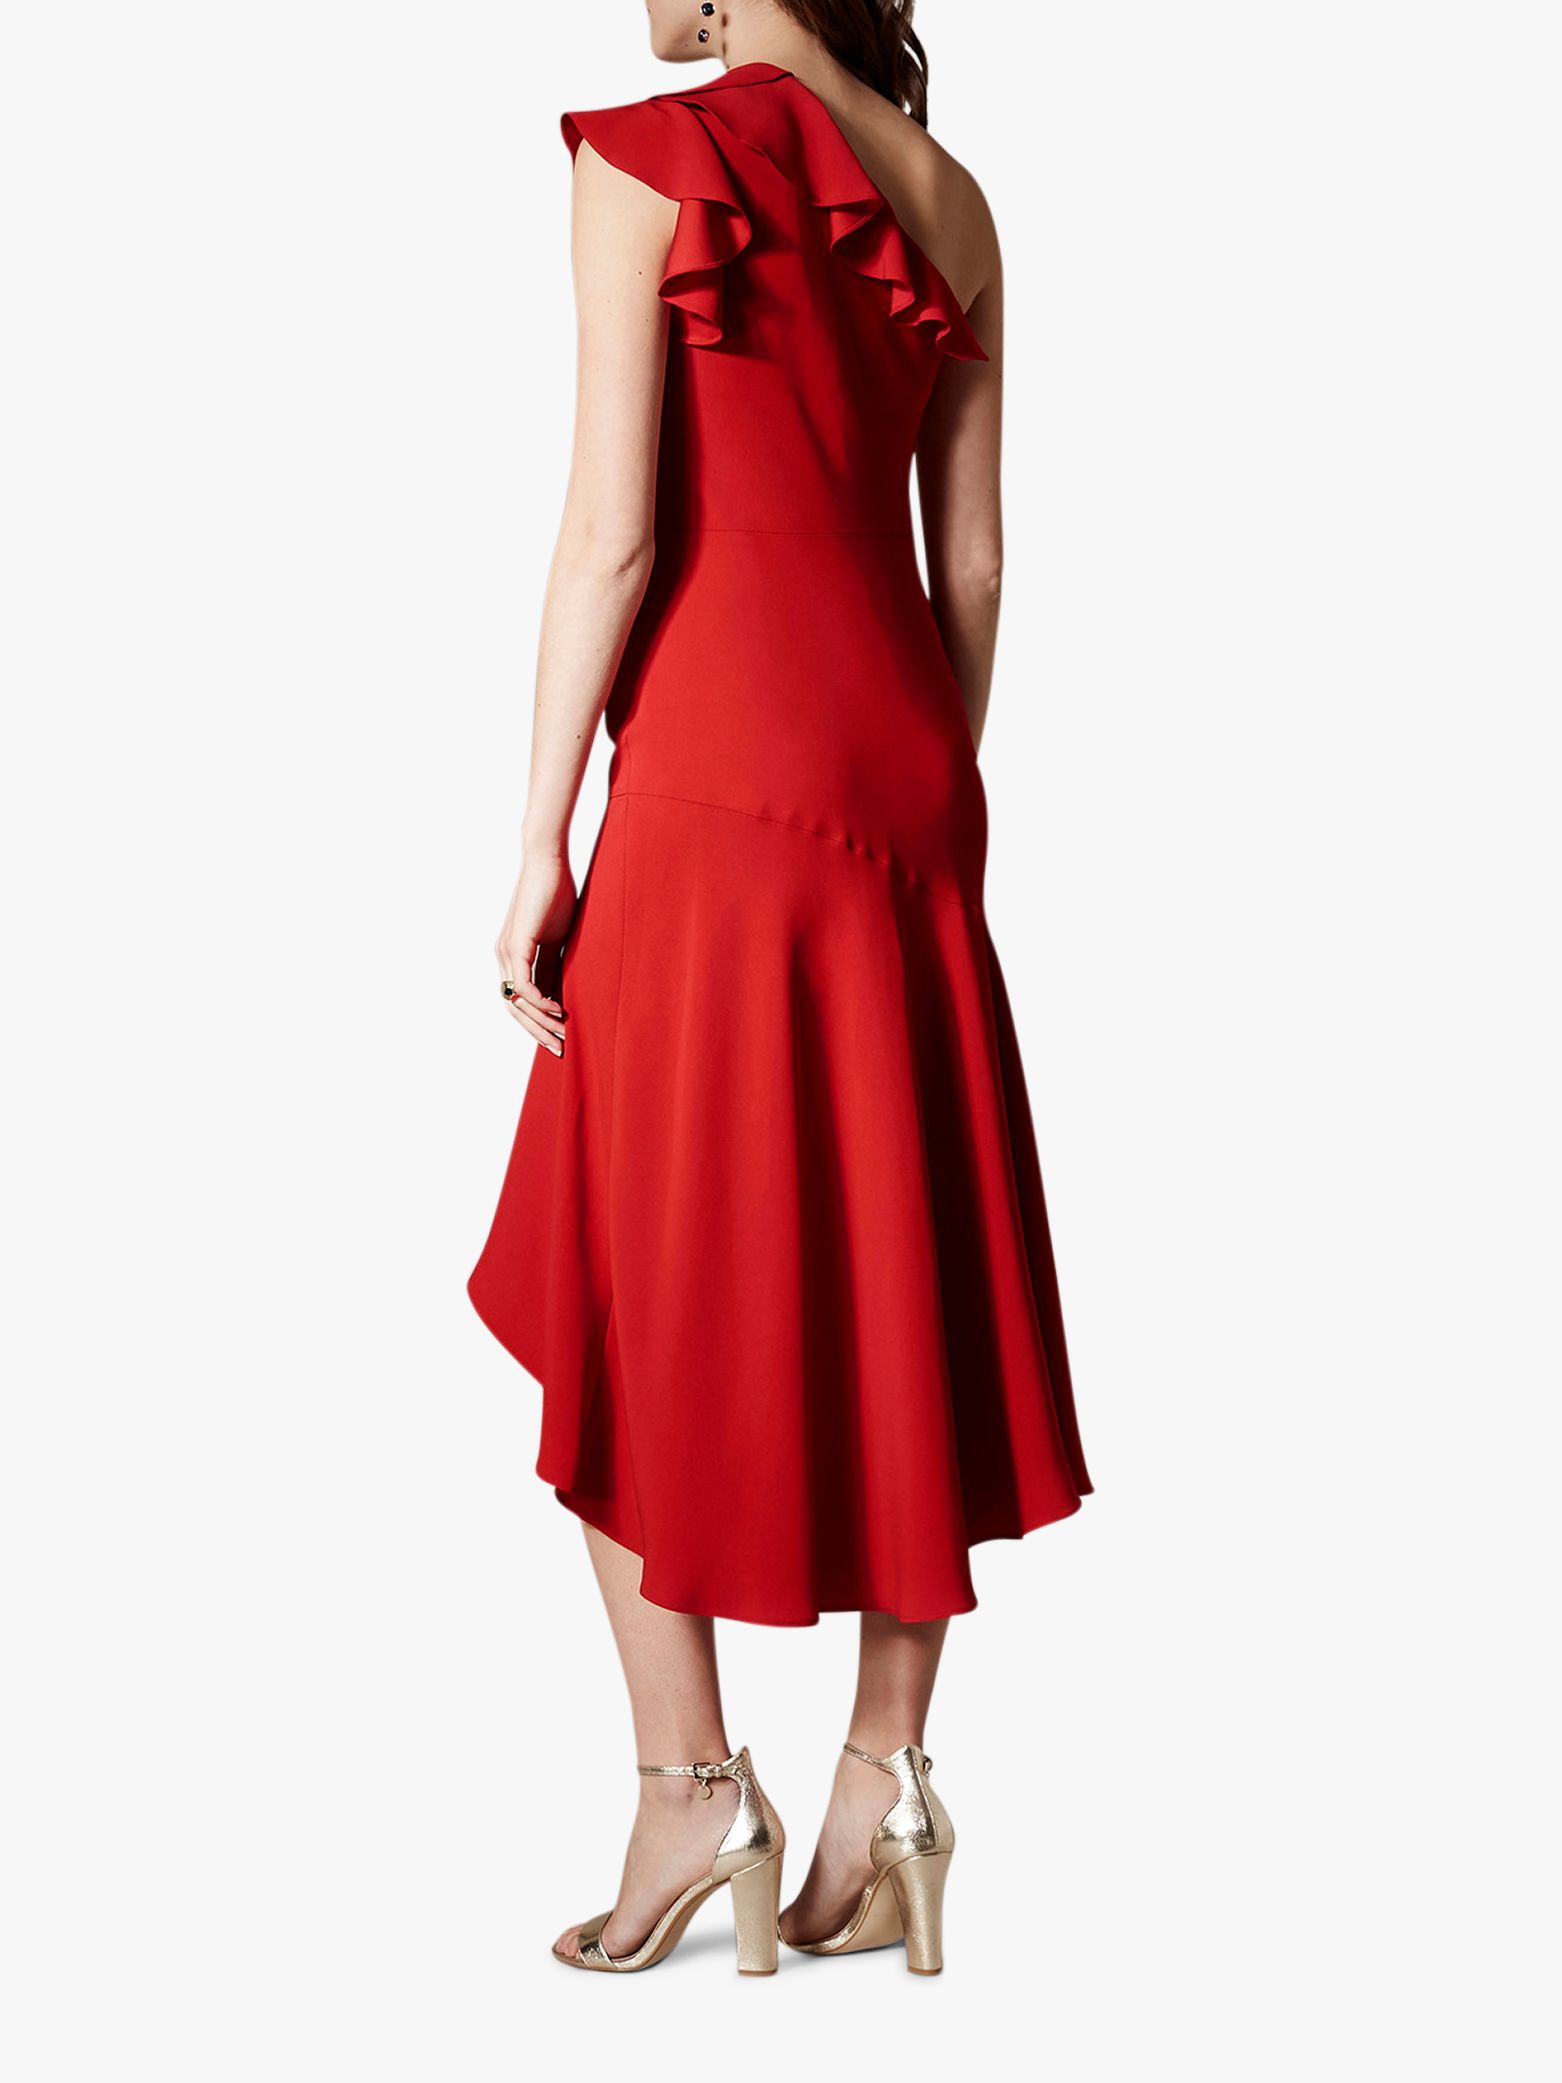 karen millen red one shoulder dress